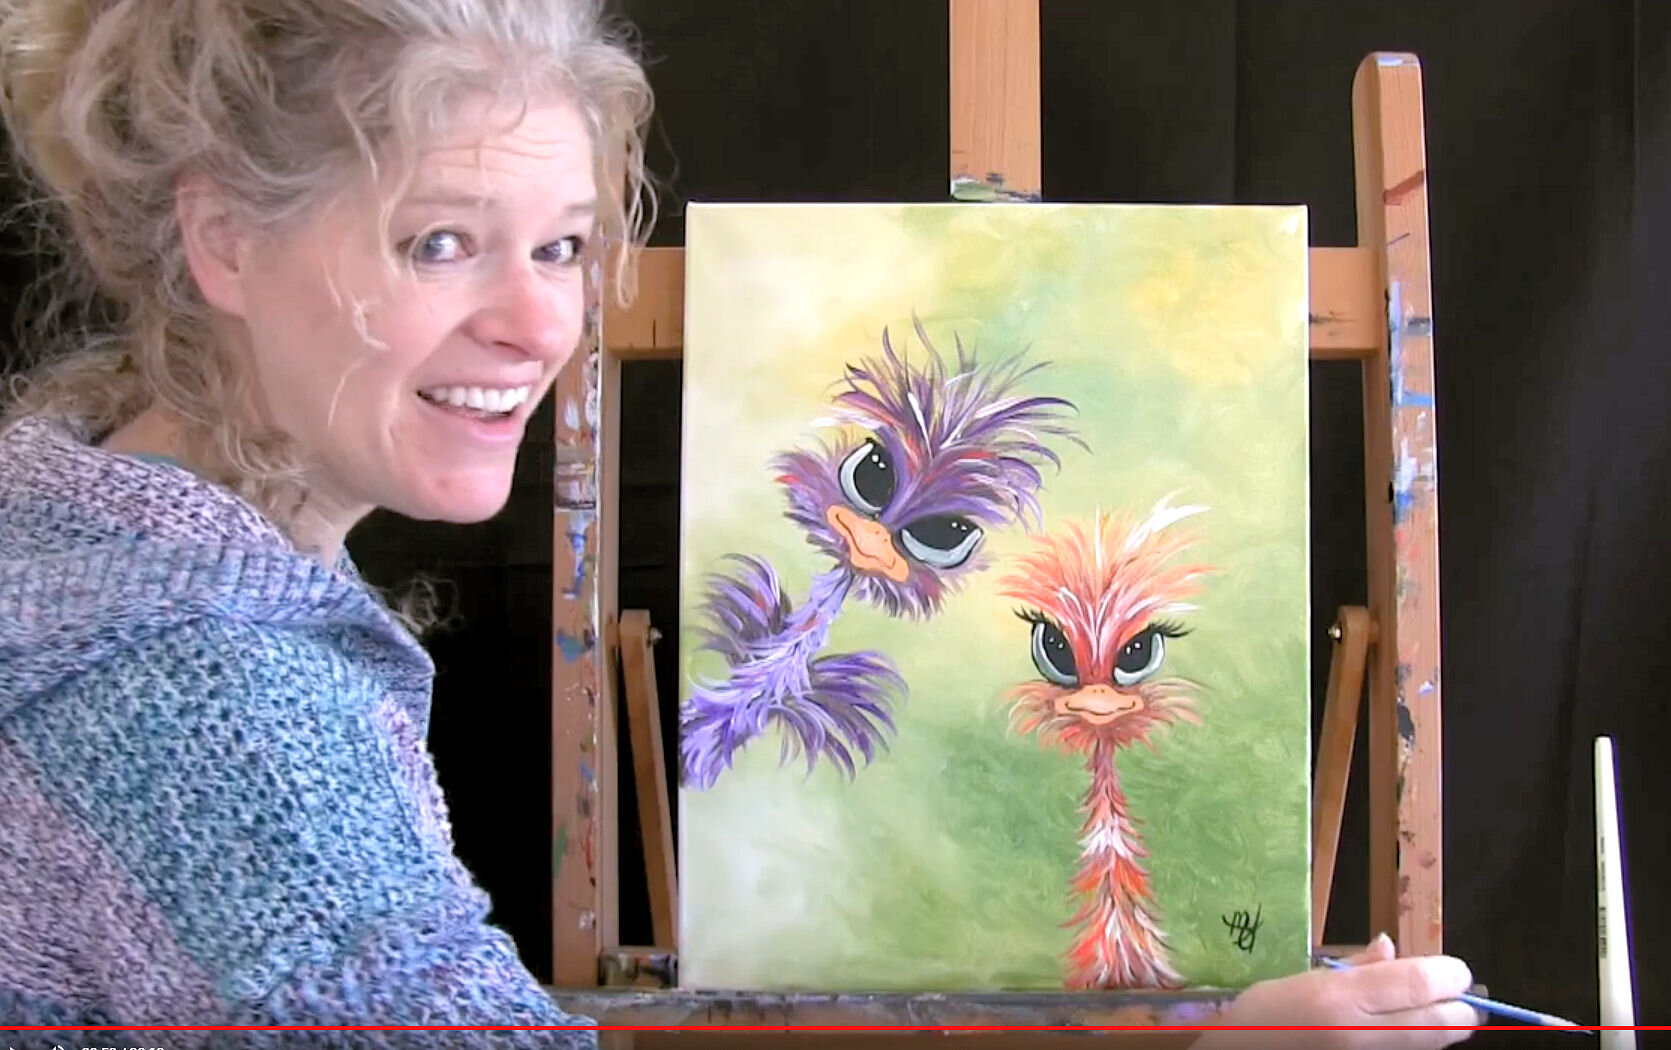 Michelle the Painter Videos — Michelle the Painter